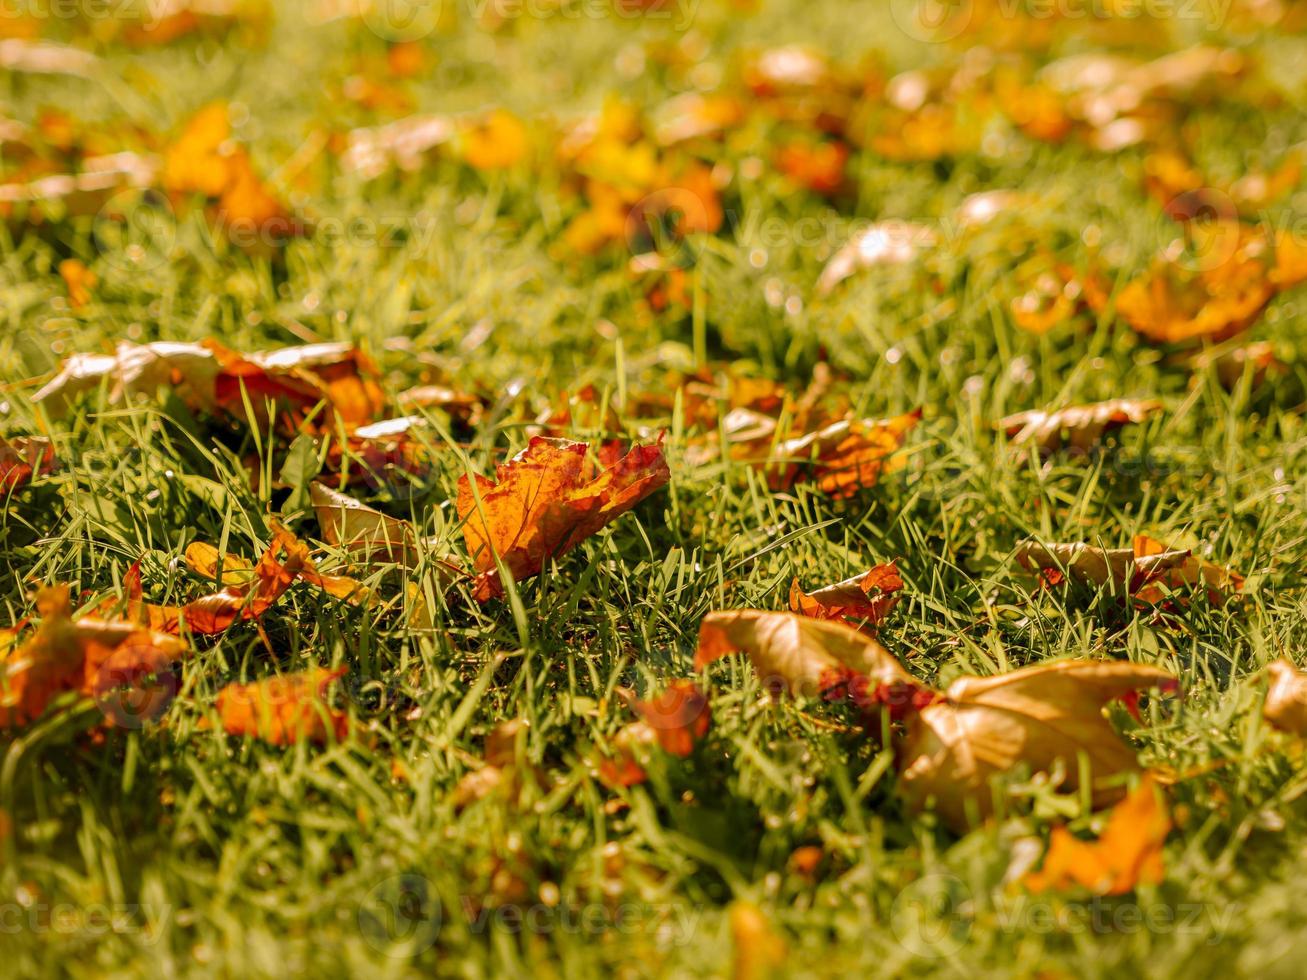 fond d'automne en octobre et novembre de feuilles d'or dans le parc sur l'herbe photo